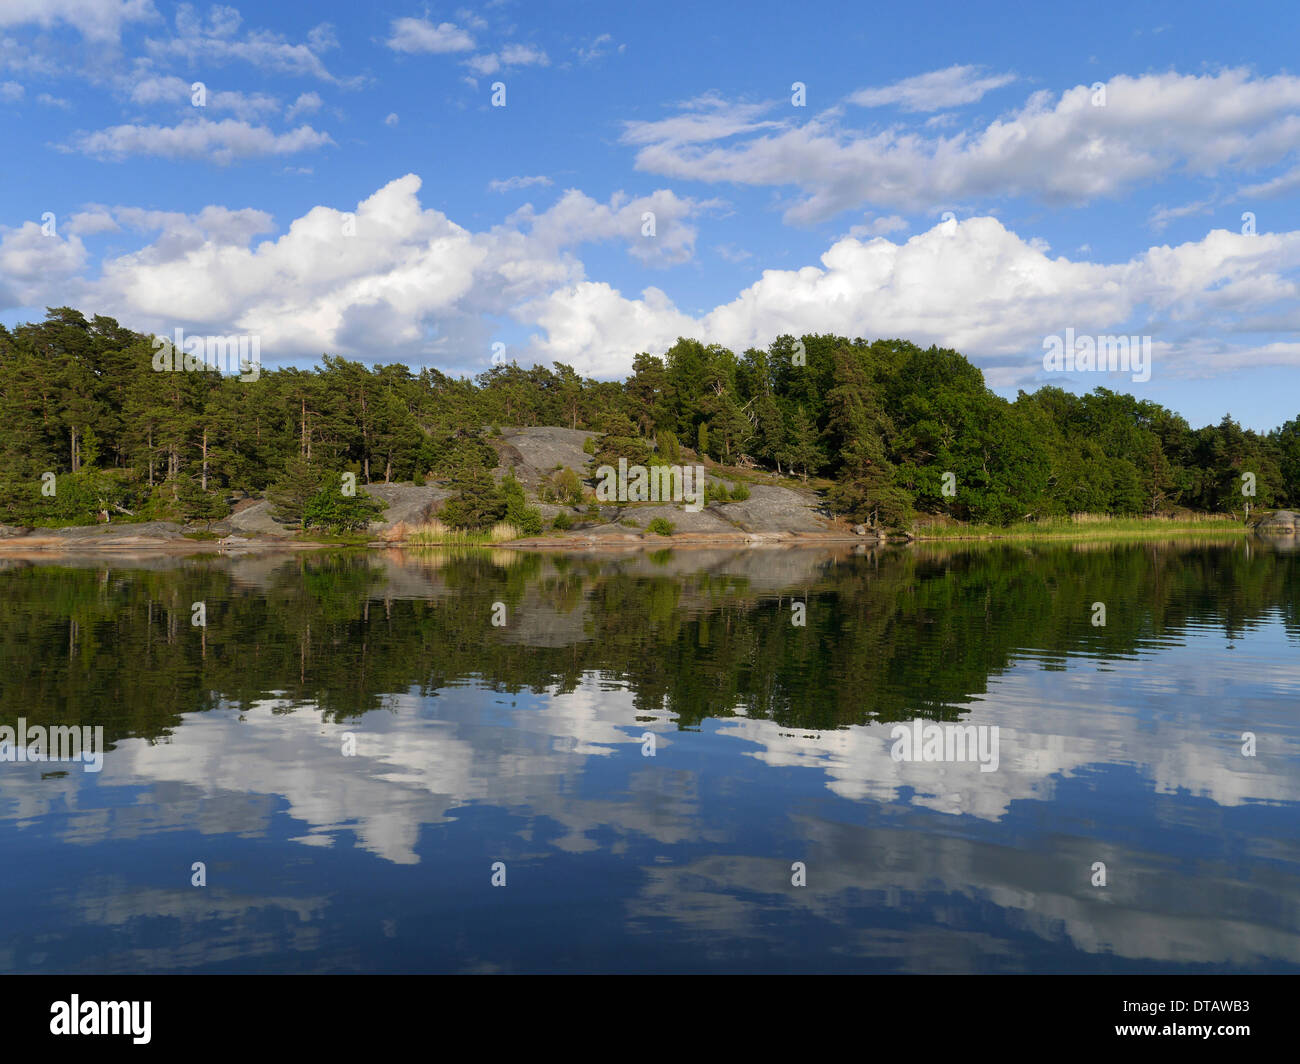 ringsön, nyköping archipelago, södermanlands län, sweden Stock Photo